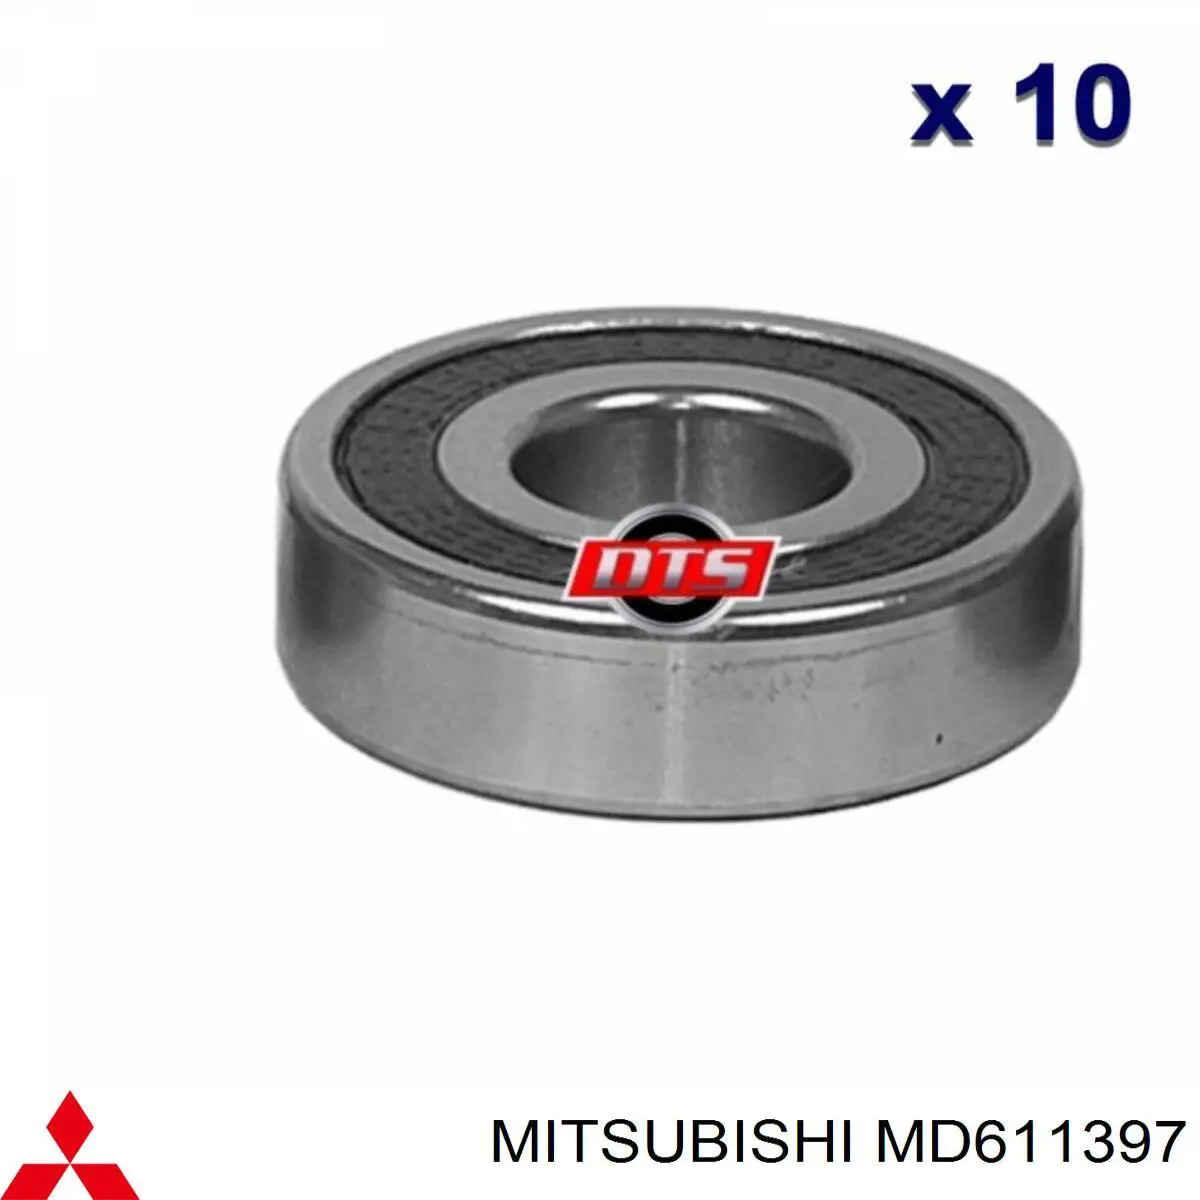 MD611397 Mitsubishi rolamento do gerador